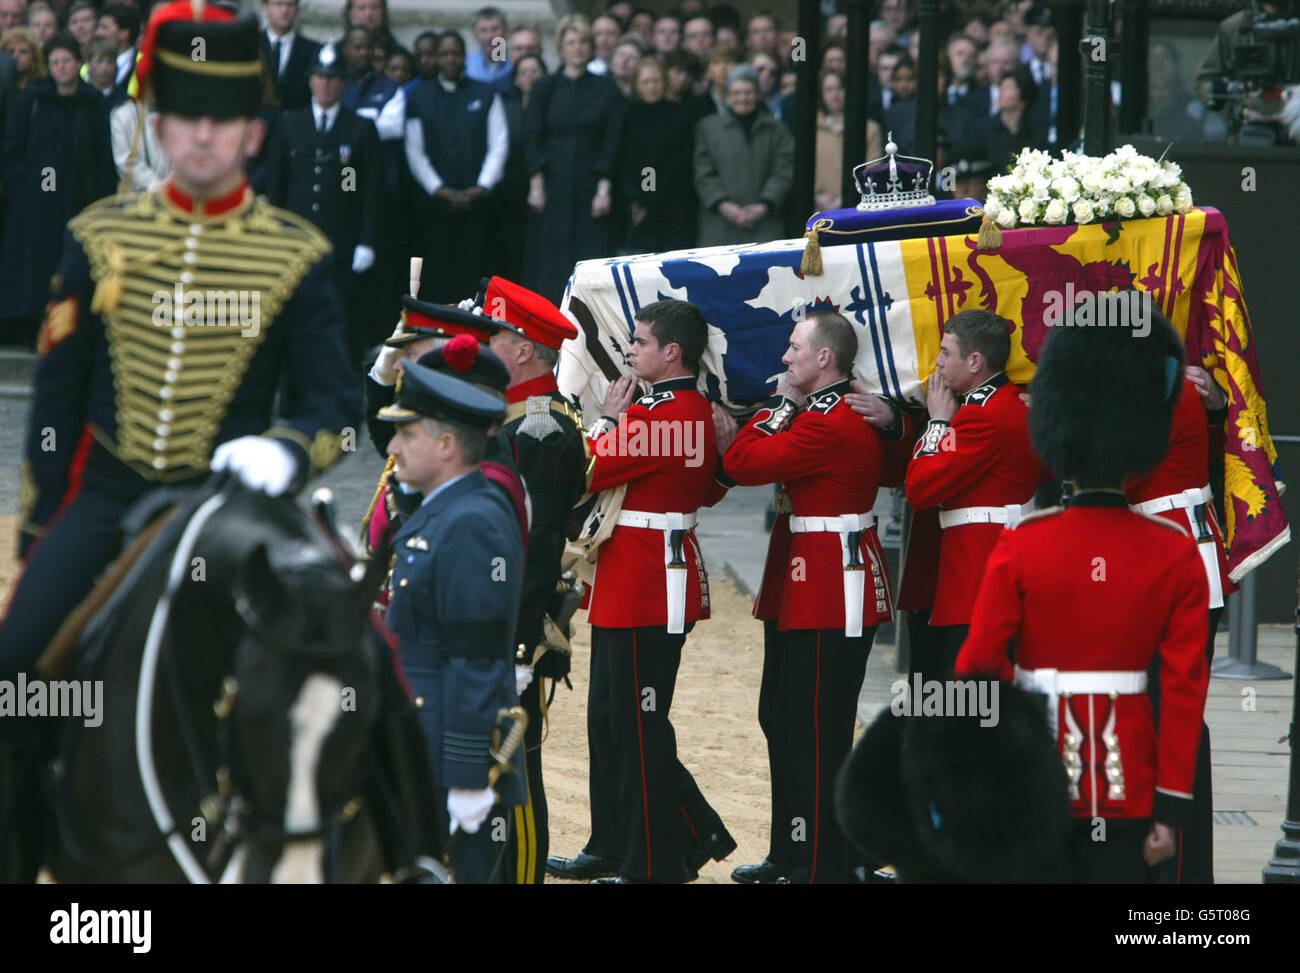 Palbärler tragen den Sarg von Queen Elizabeth, der Queen Mother, aus der Westminster Hall zu einem Waffenwagen in London. Tausende haben der Königin Mutter ihre letzte Ehre erwiesen. * ... Nach ihrer Beerdigung wird sie neben ihrem verstorbenen Ehemann, König George VI., in der St. George's Chapel in Windsor beigesetzt Stockfoto